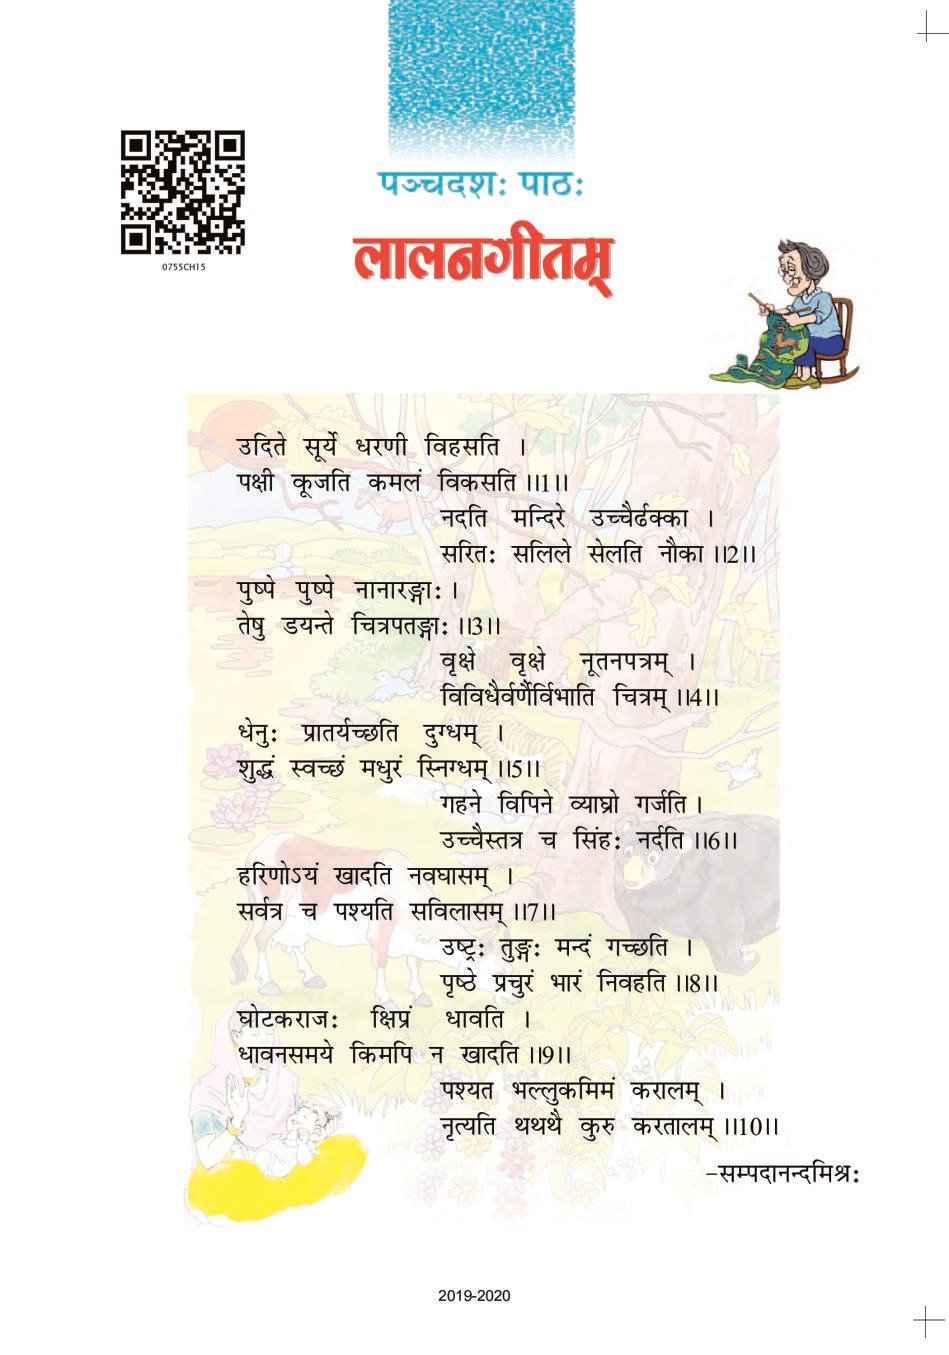 NCERT Book Class 7 Sanskrit (रुचिरा) Chapter 15 लालनगीतम - Page 1